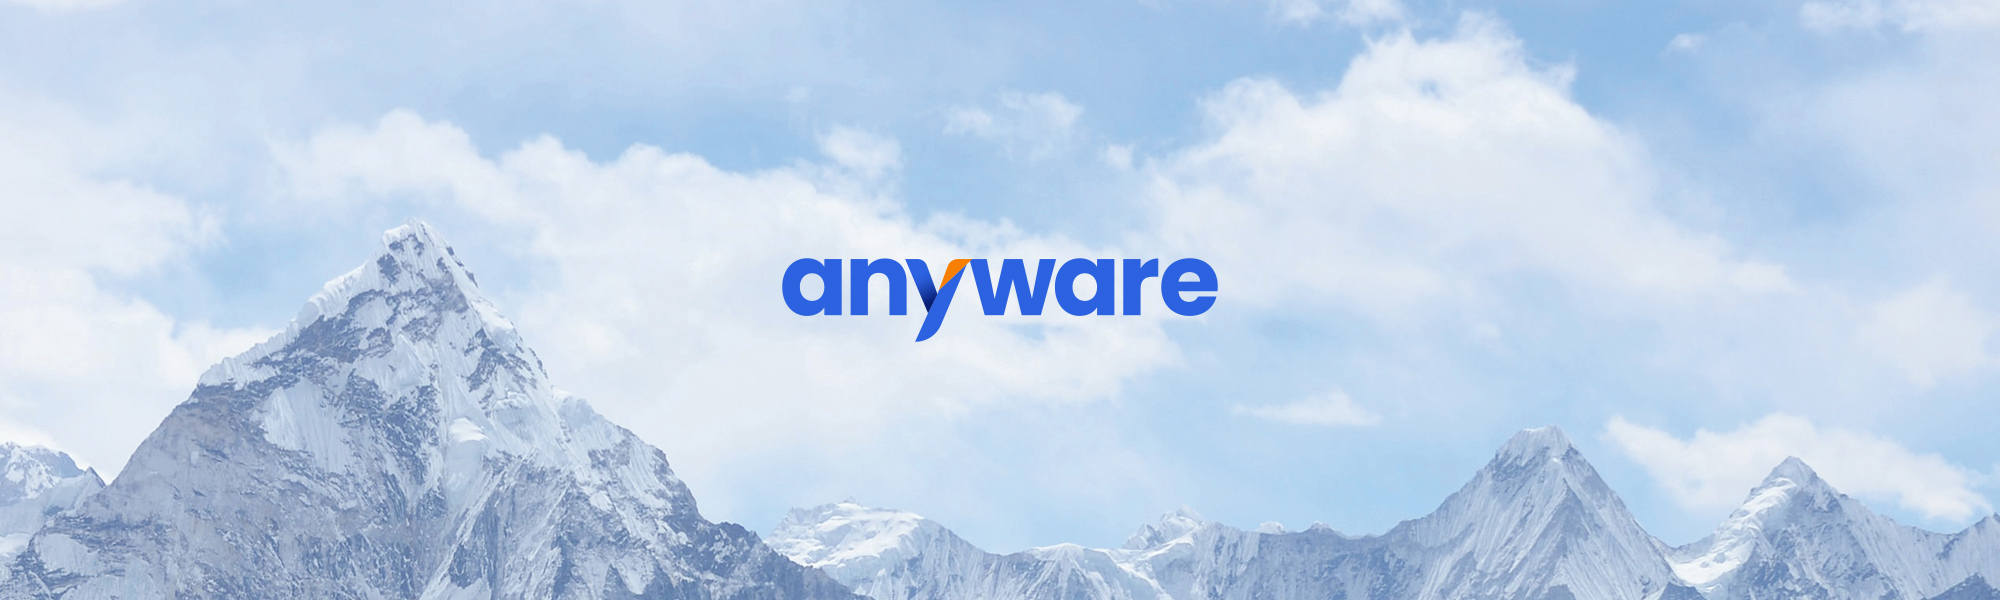 news-banner-anyware-new-logo